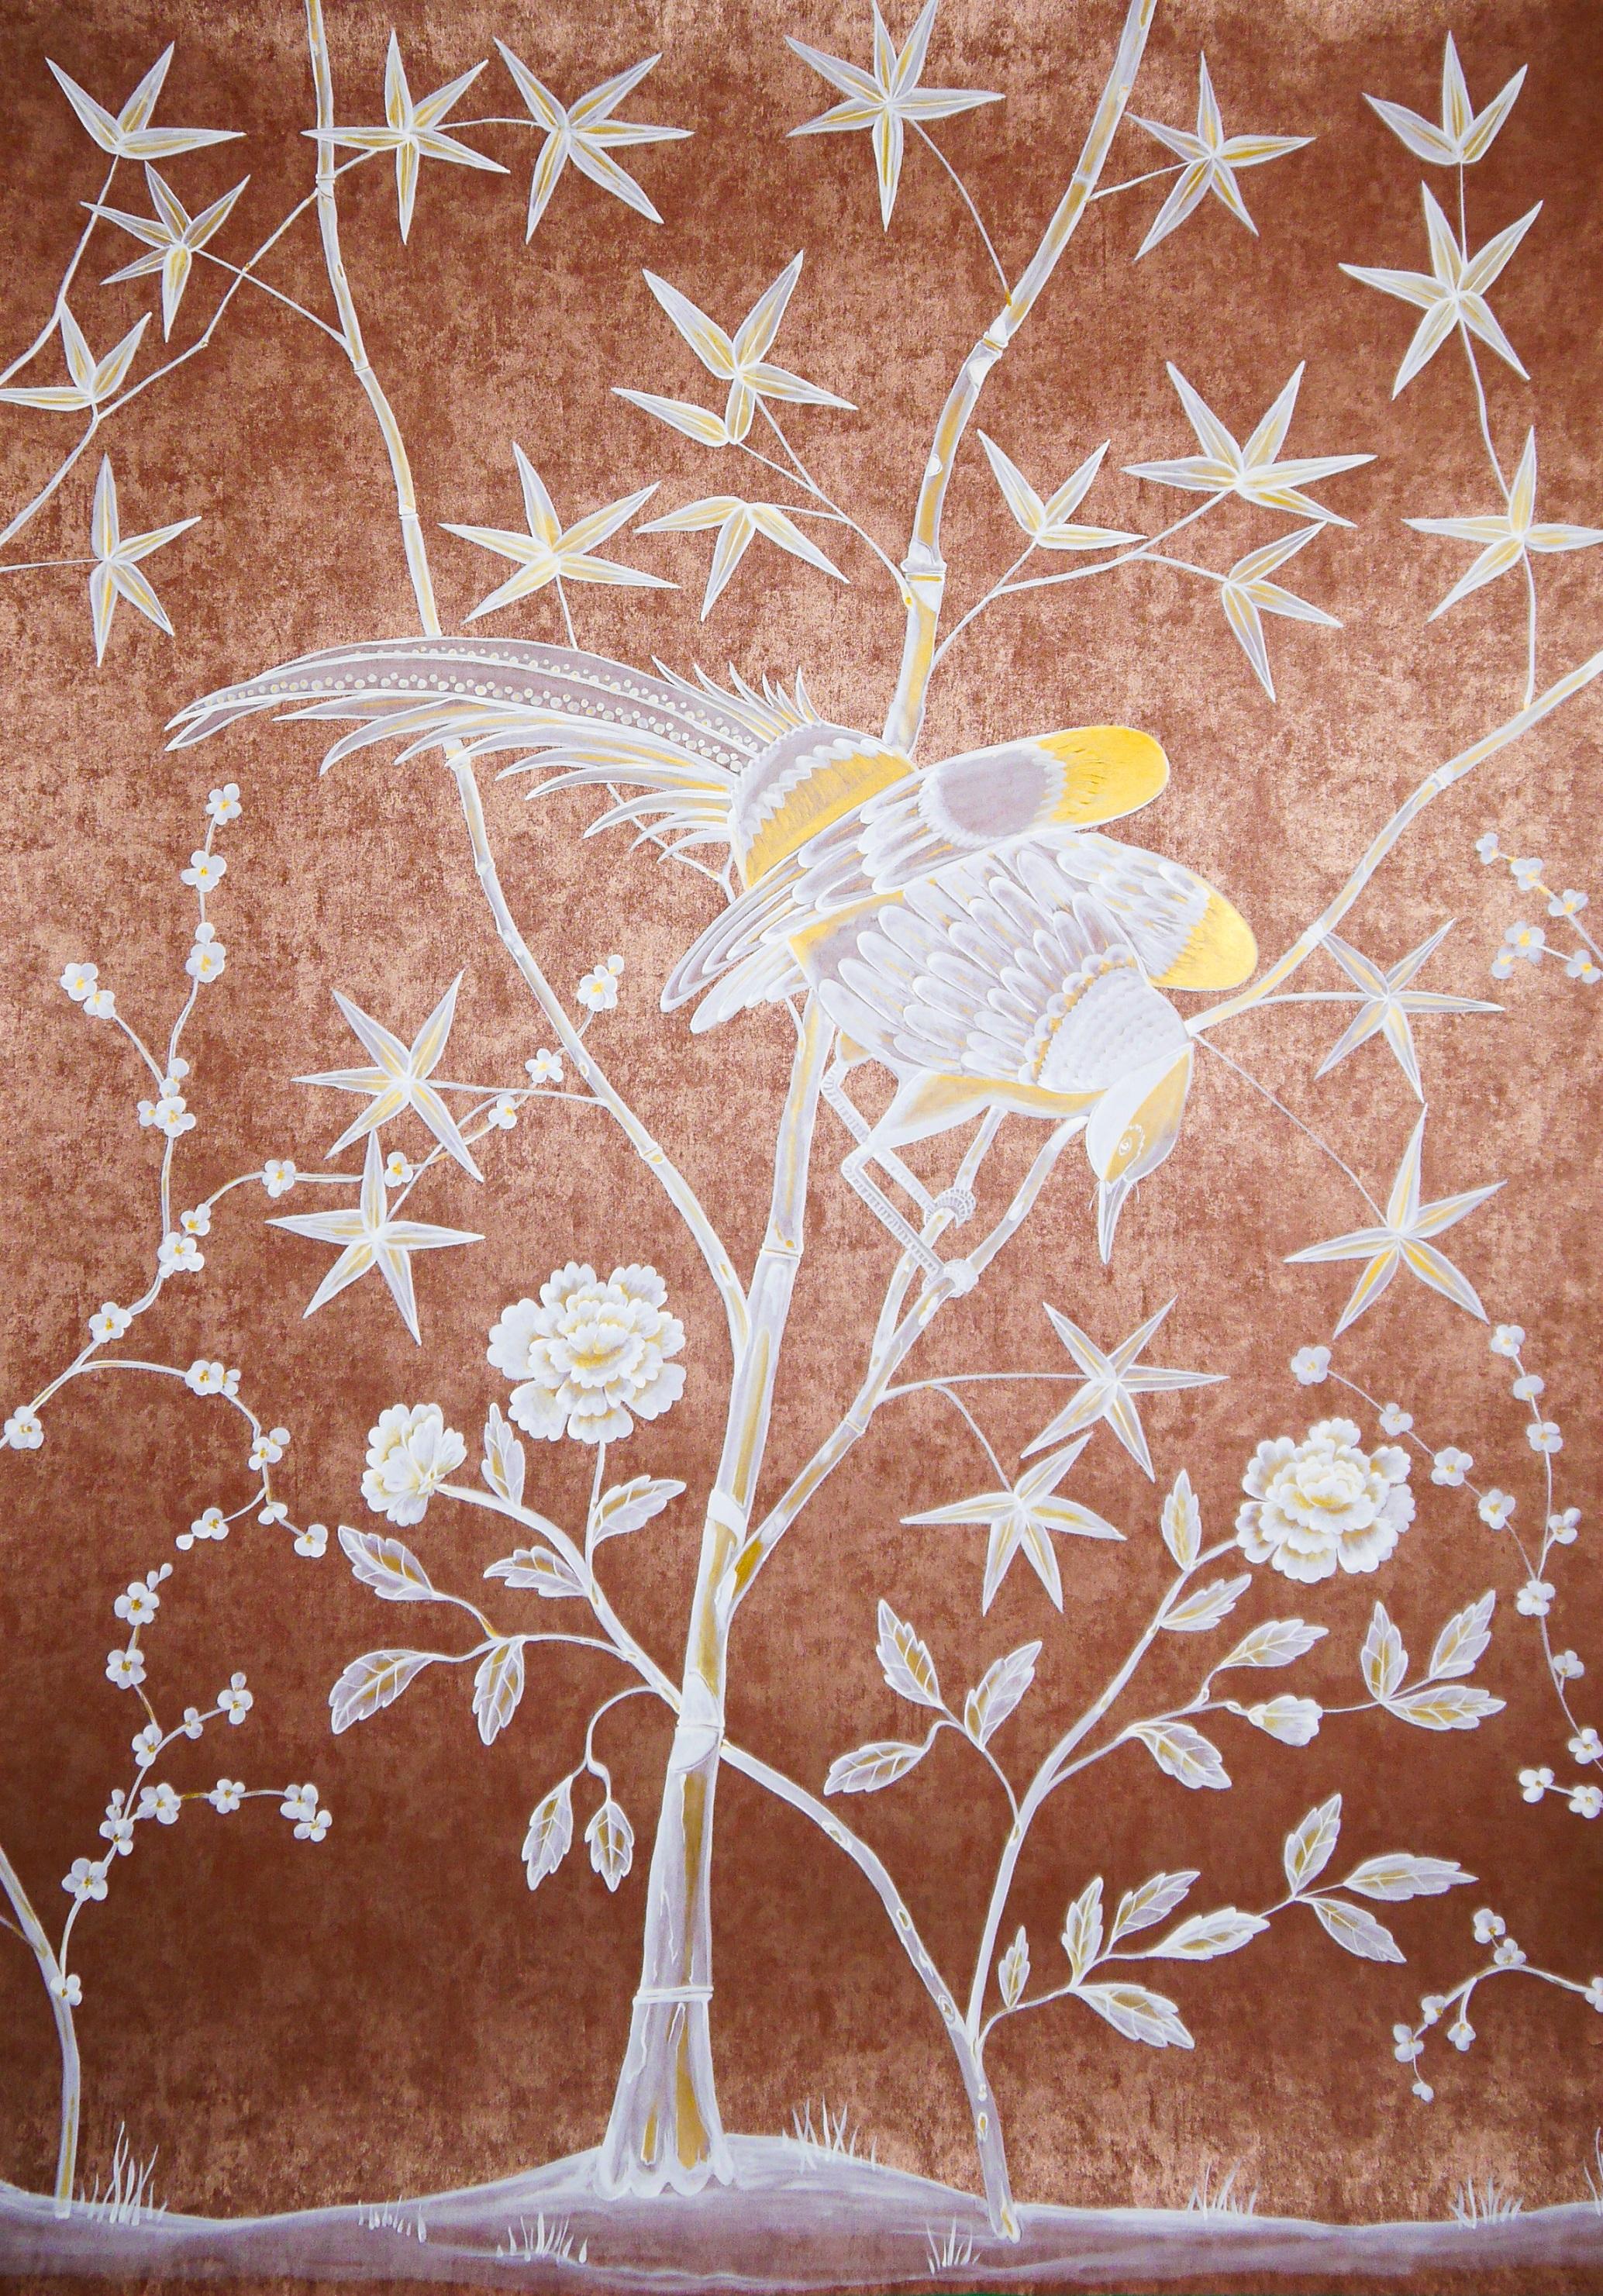 Caledon : oiseaux exotiques et bambous sur un fond métallique rouge or, inspiré de l'original Caledon. Un ensemble de trois panneaux.

Une commande personnalisée, plusieurs couleurs de fond et de taille sont possibles.
Vous pouvez choisir